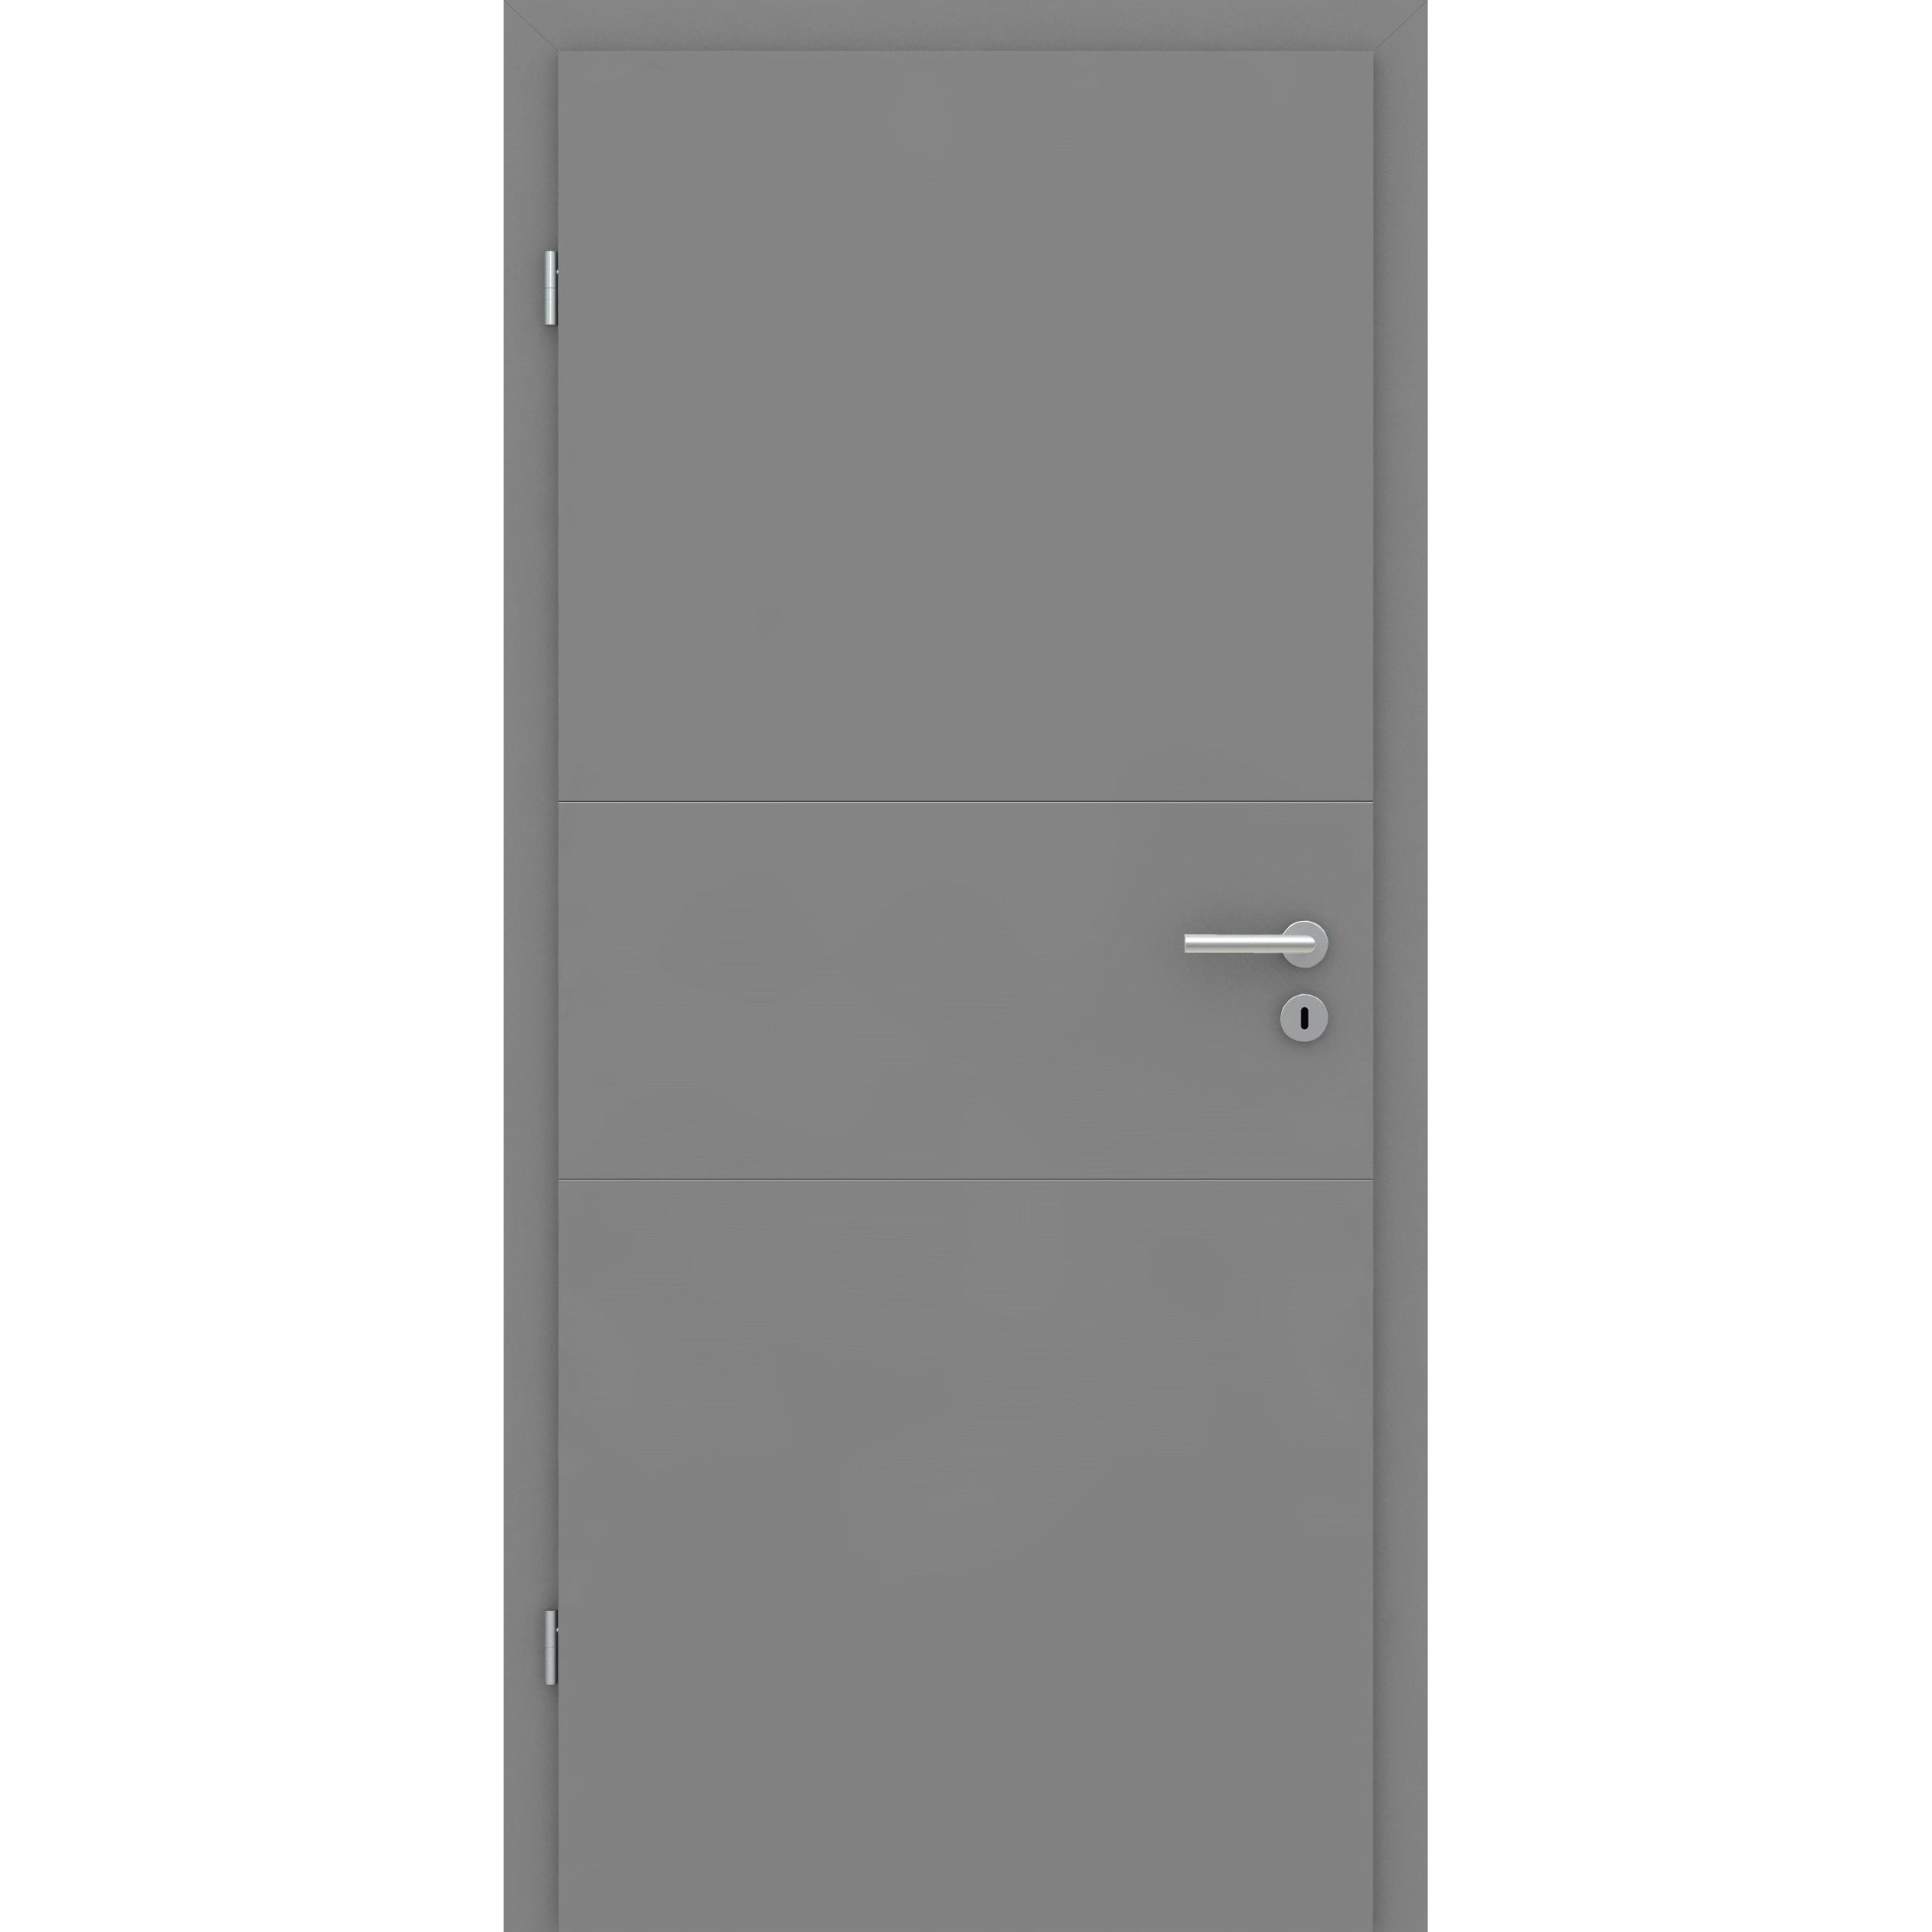 Zimmertür mit Zarge grau 2 Rillen quer Designkante - Modell Designtür Q27